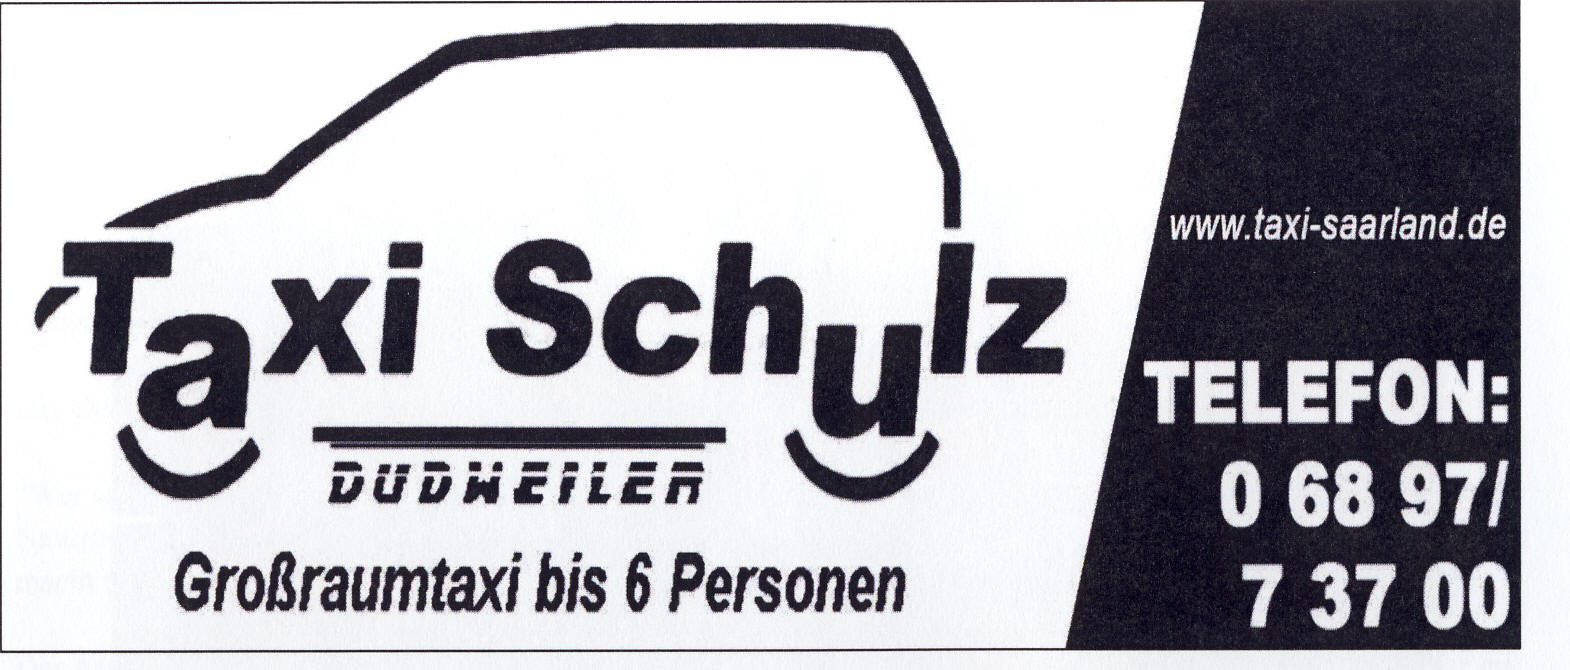 logo-taxi-schulz